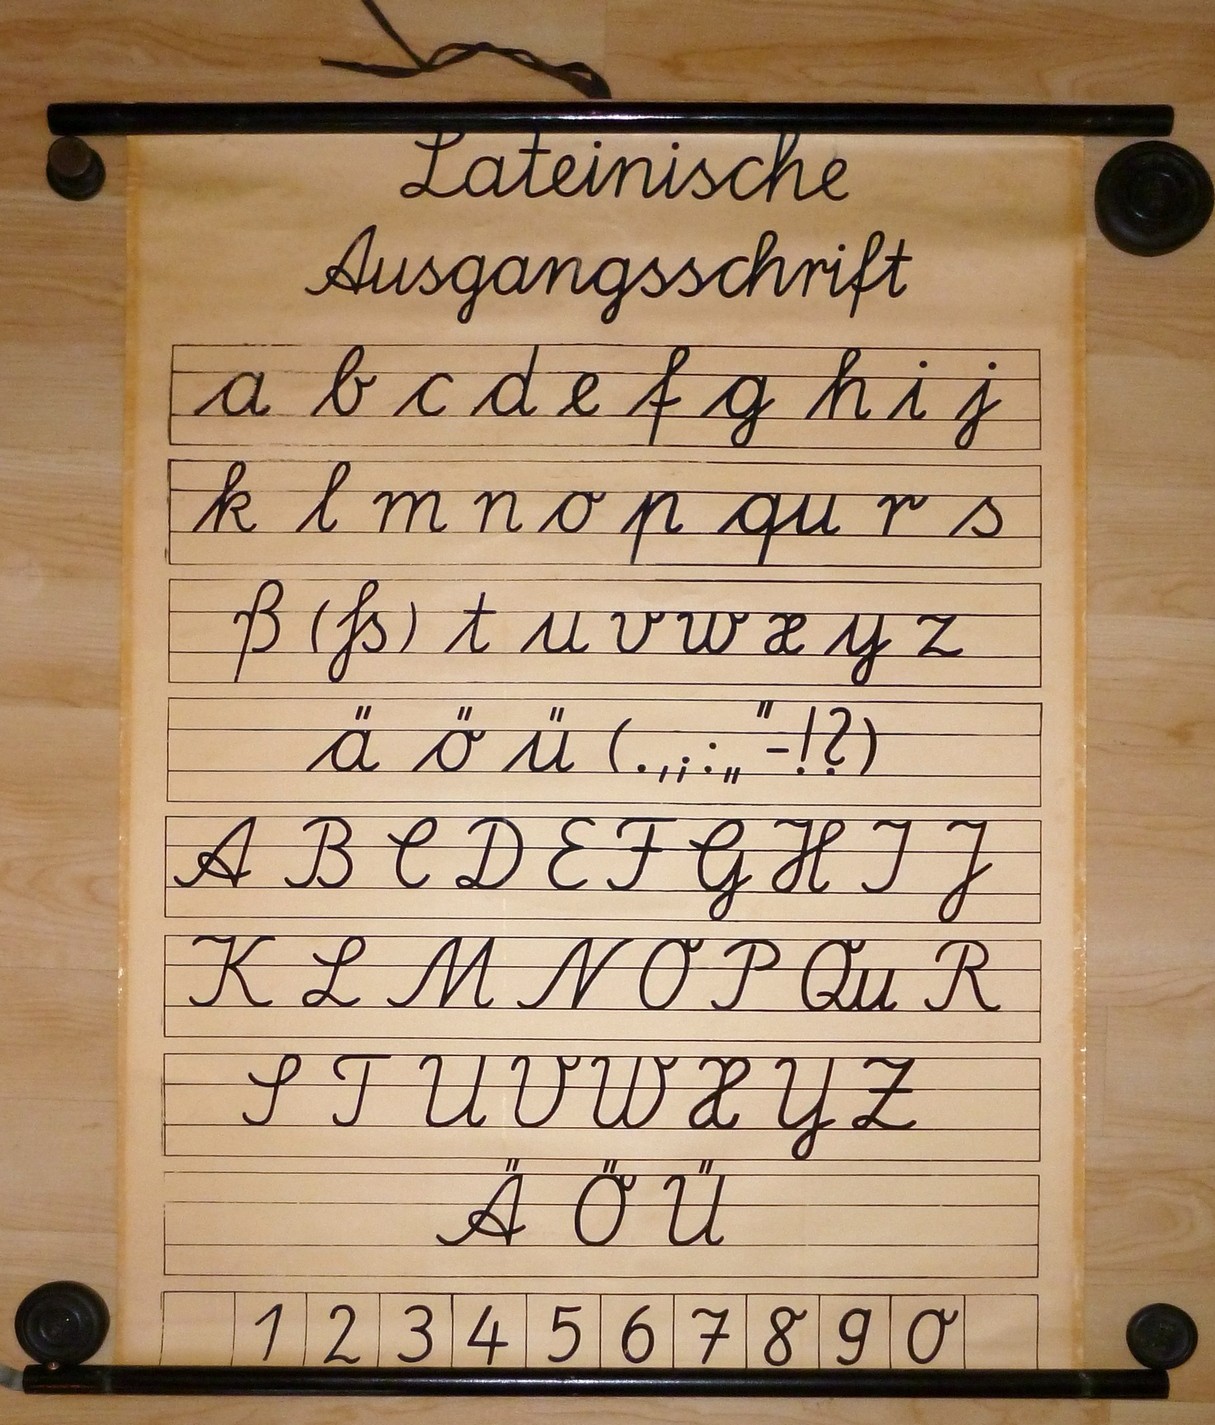 Schrifttafel für Lateinische Ausgangsschrift (Kulturverein Guntersblum CC BY-NC-SA)